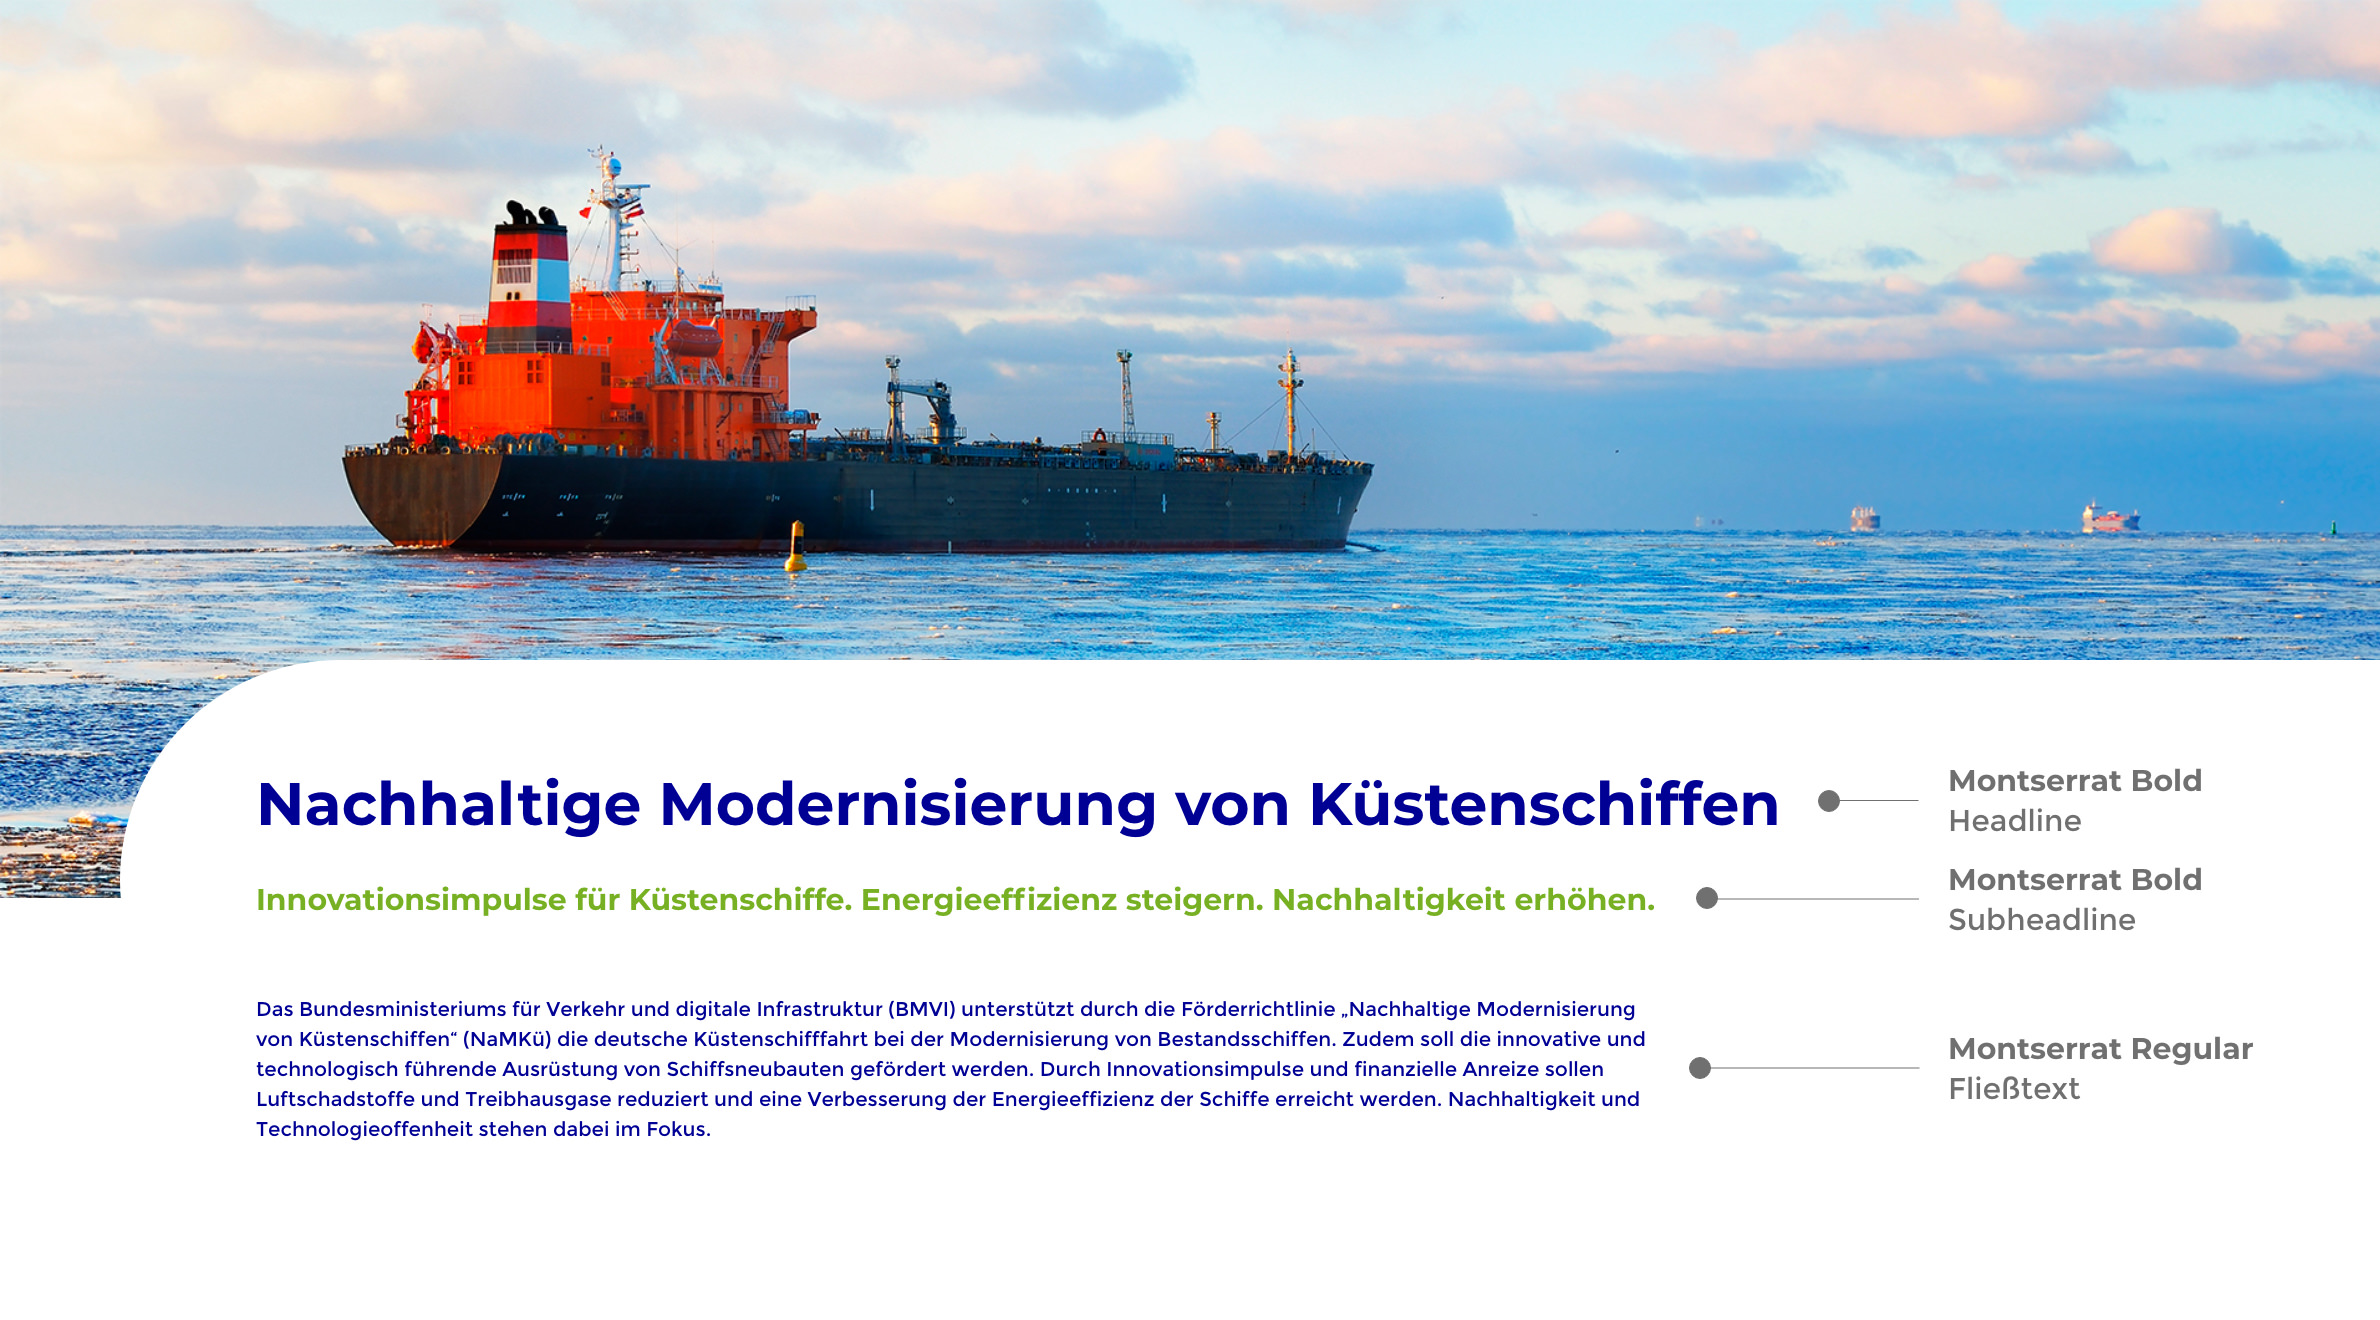 TÜV Rheinland Nachhaltige Modernisierung von Küstenschiffen, Typografie